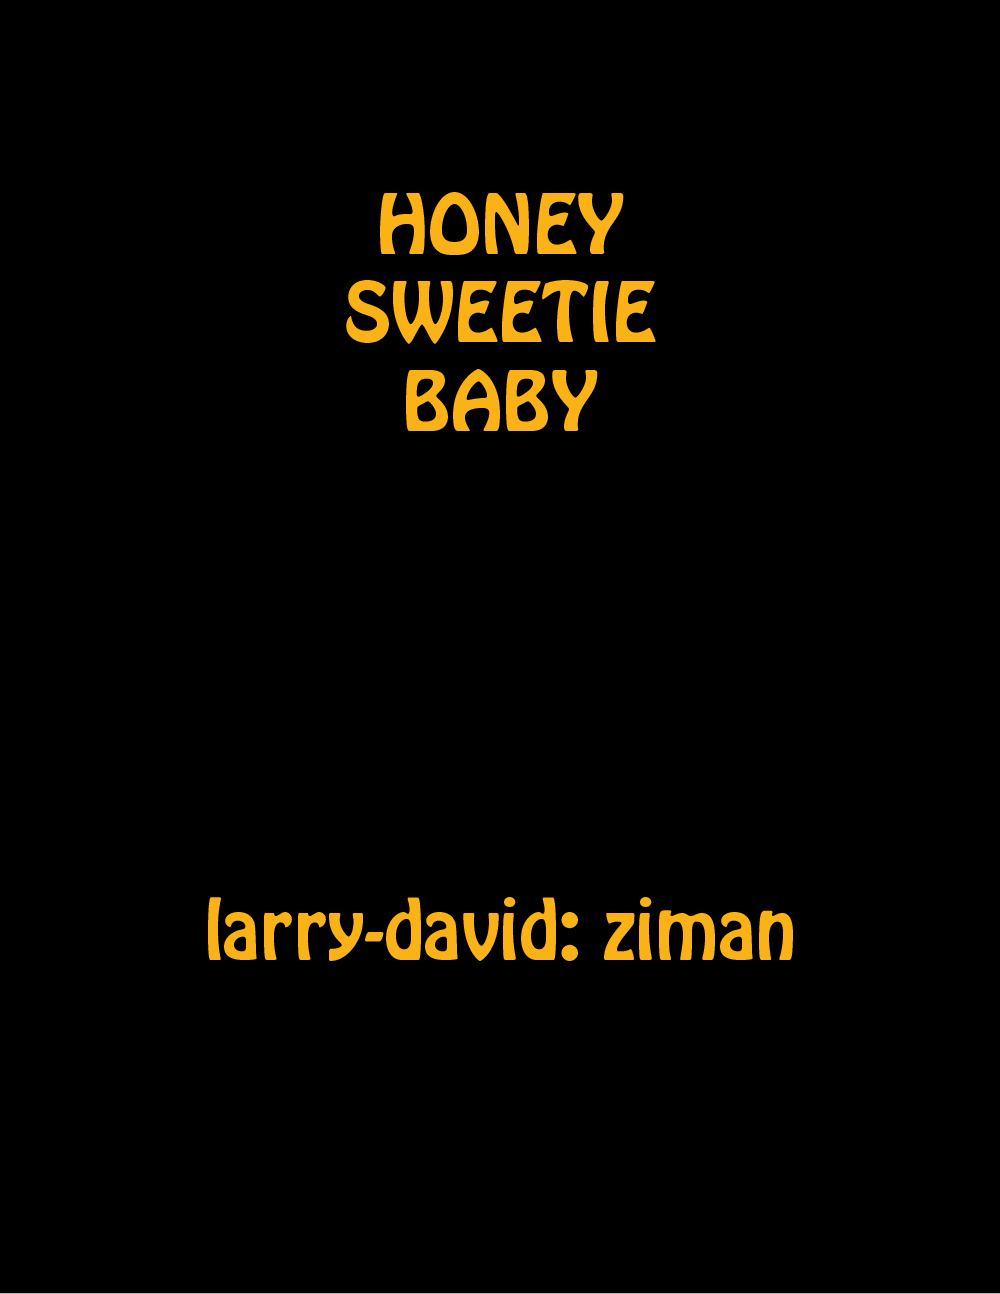 Honey Sweetie